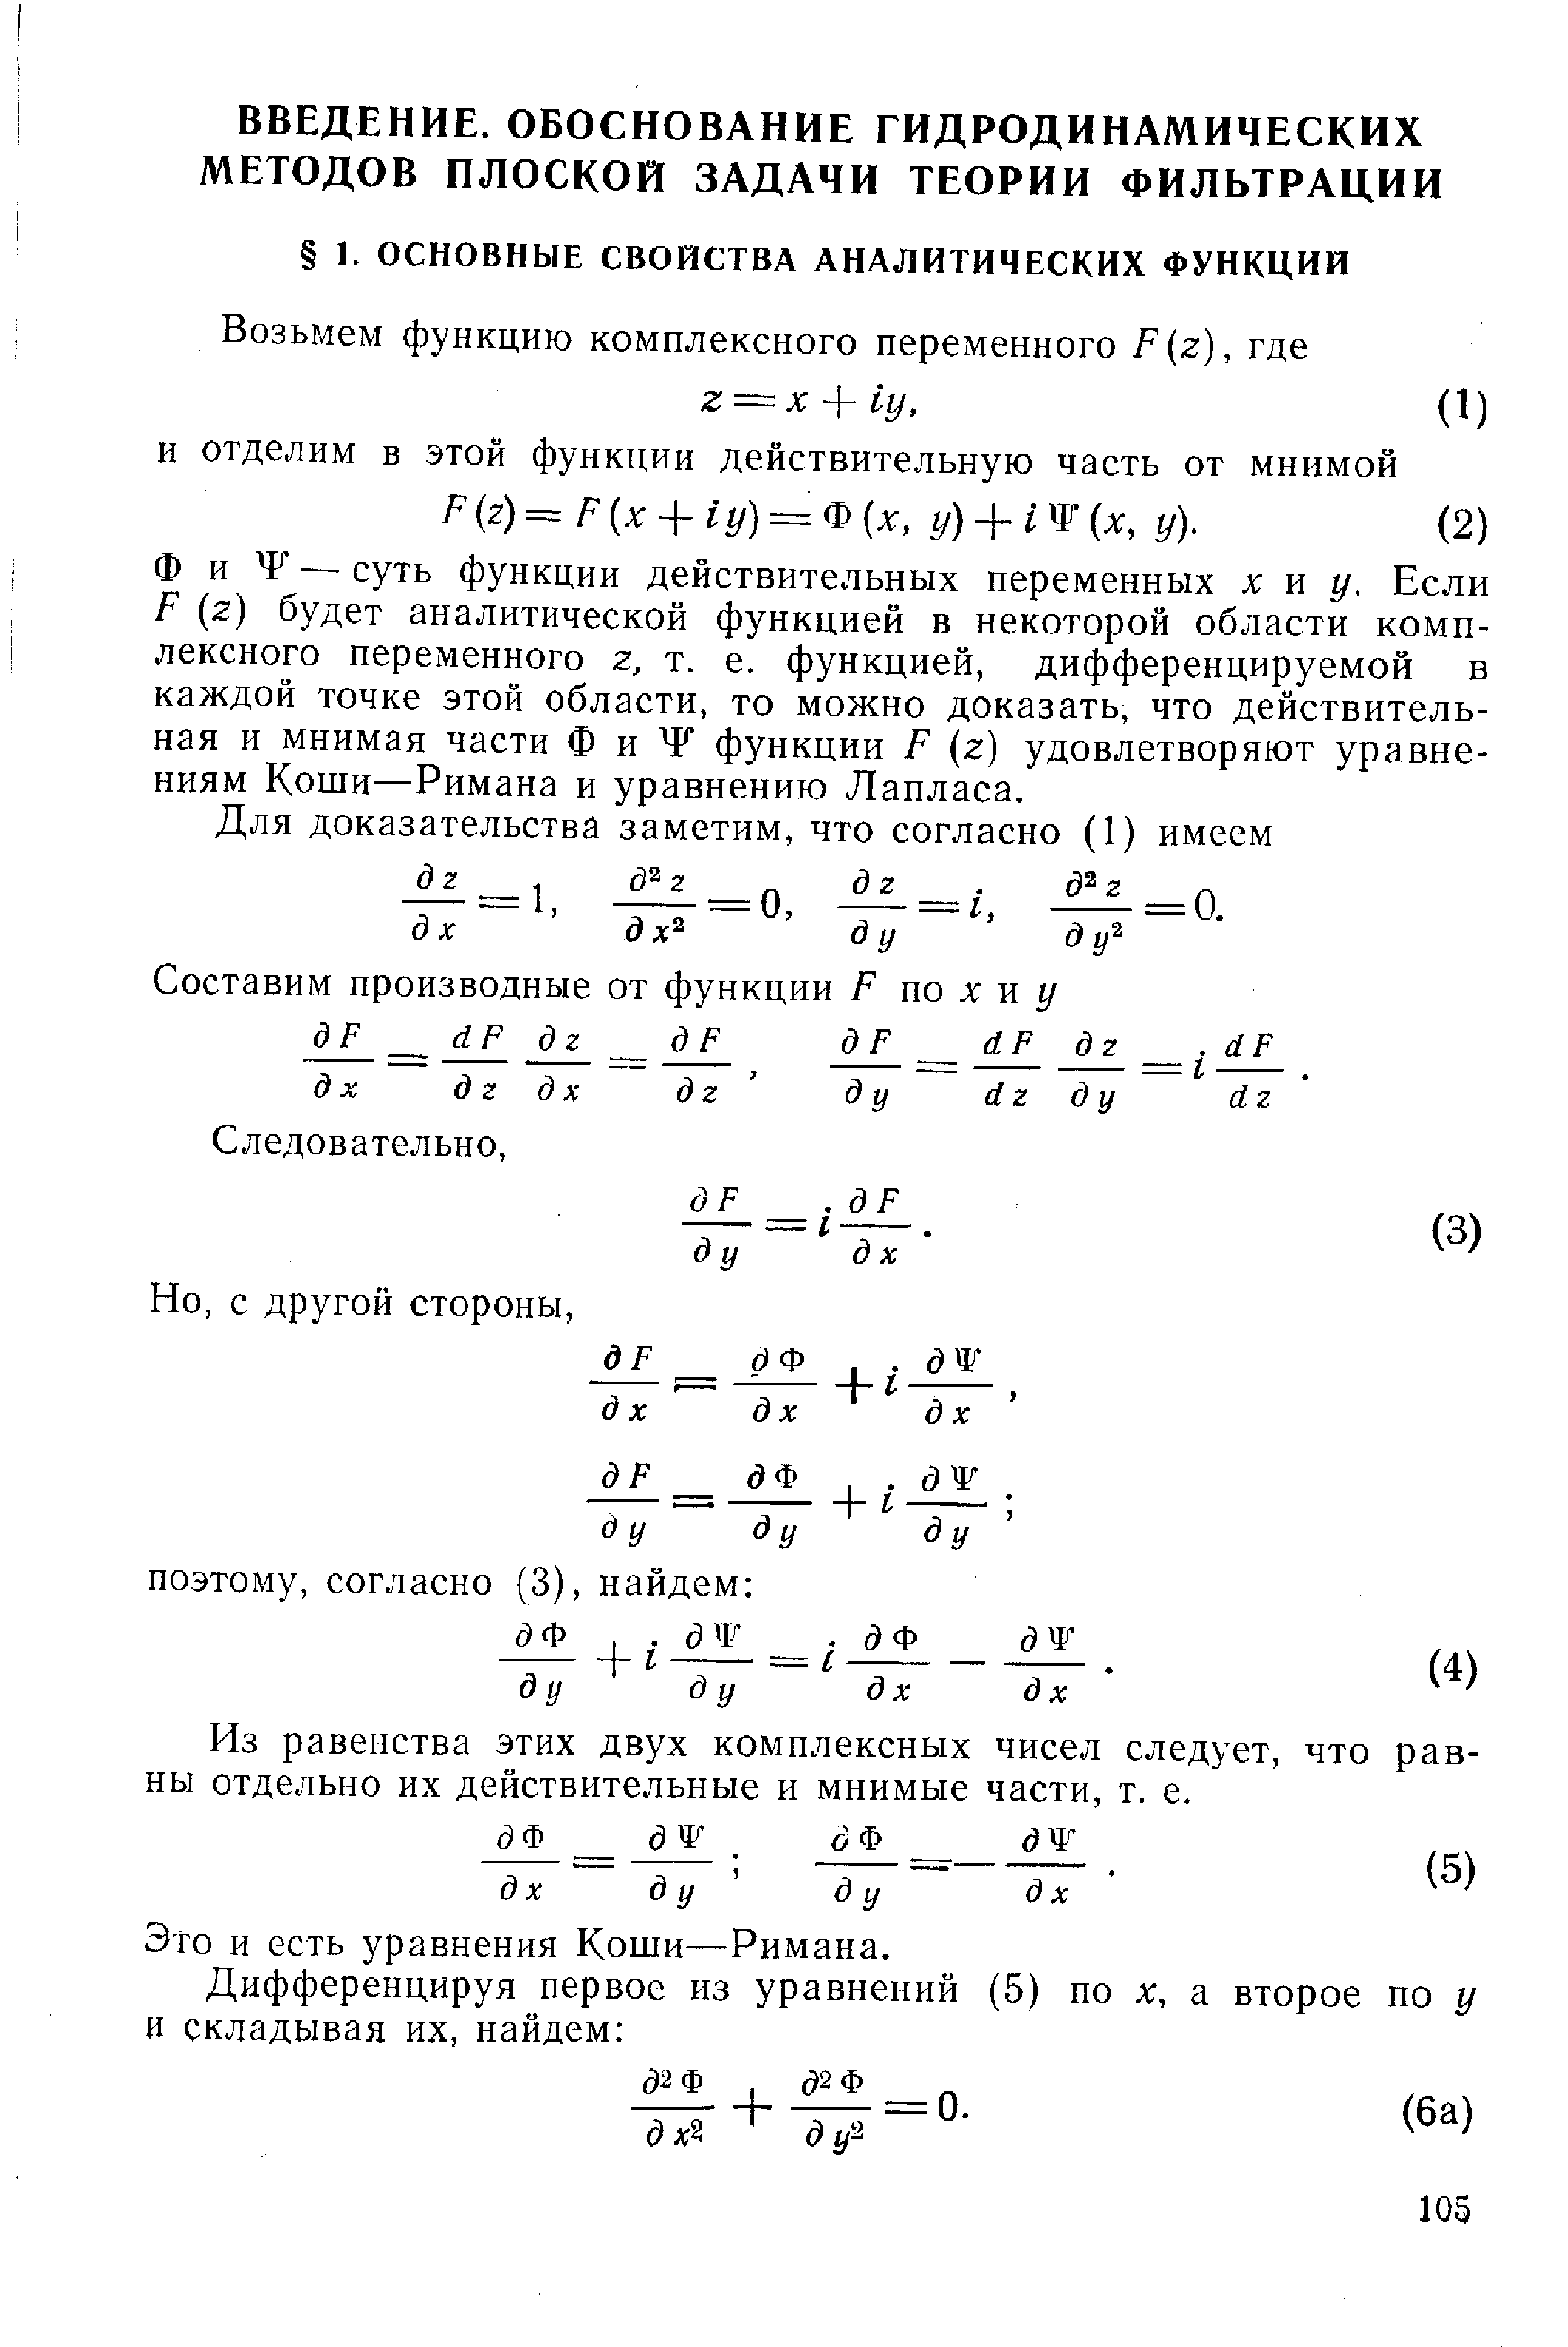 Ф и Г — суть функции действительных переменных хну. Если Р (г) будет аналитической функцией в некоторой области комплексного переменного г, т. е. функцией, дифференцируемой в каждой точке этой области, то можно доказать, что действительная и мнимая части Ф и Ч функции Р г) удовлетворяют уравнениям Коши—Римана и уравнению Лапласа.